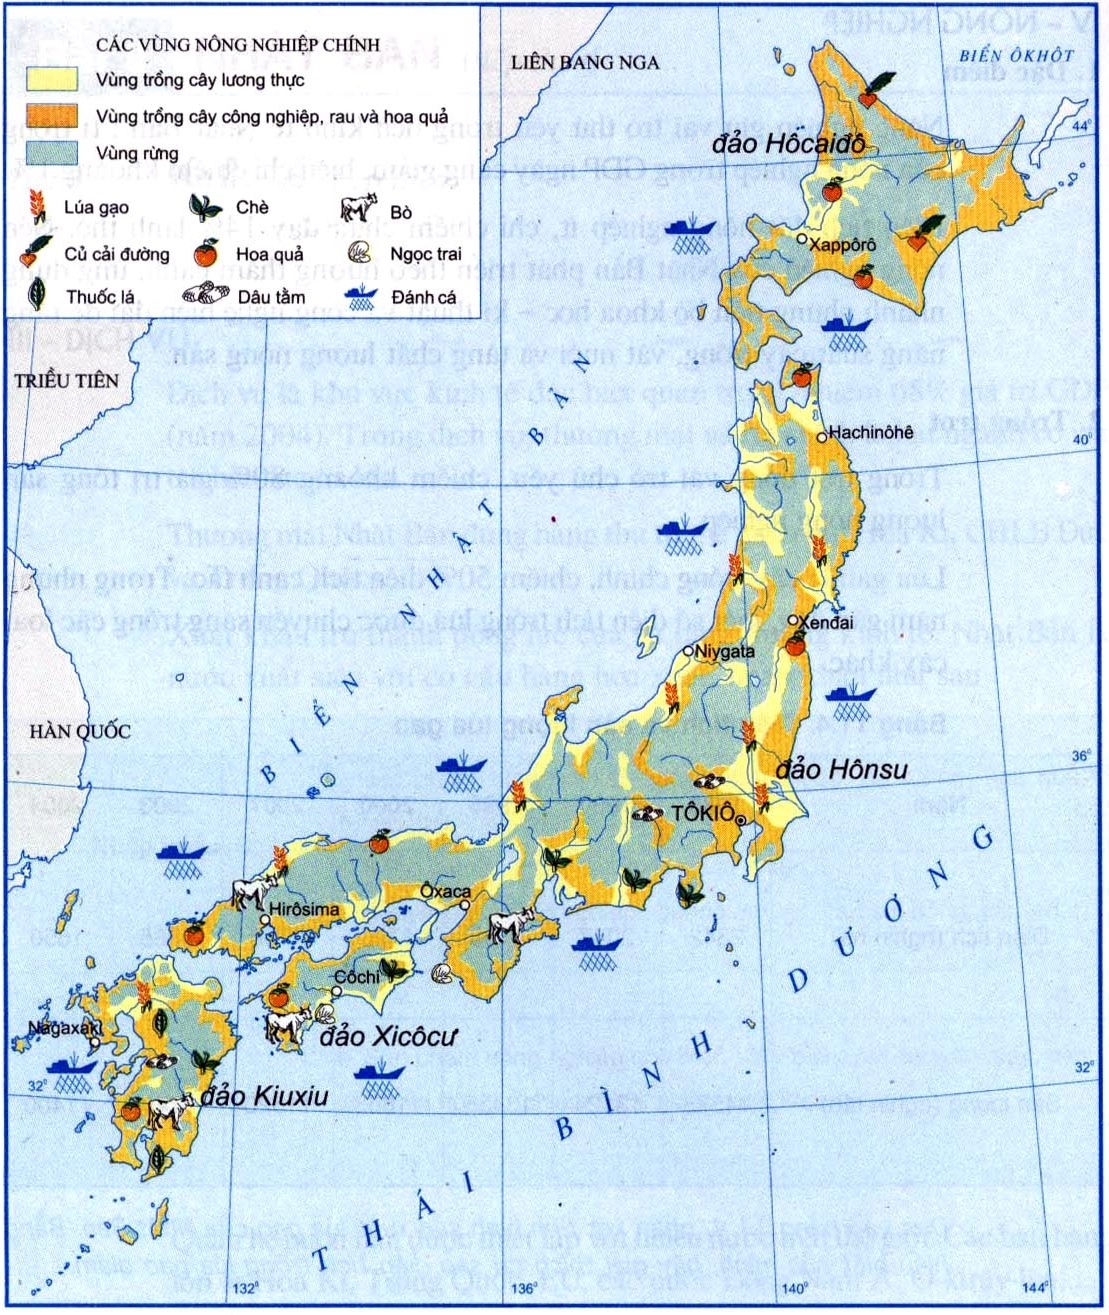 Bản đồ phân bố sản xuất nông nghiệp ở Nhật Bản